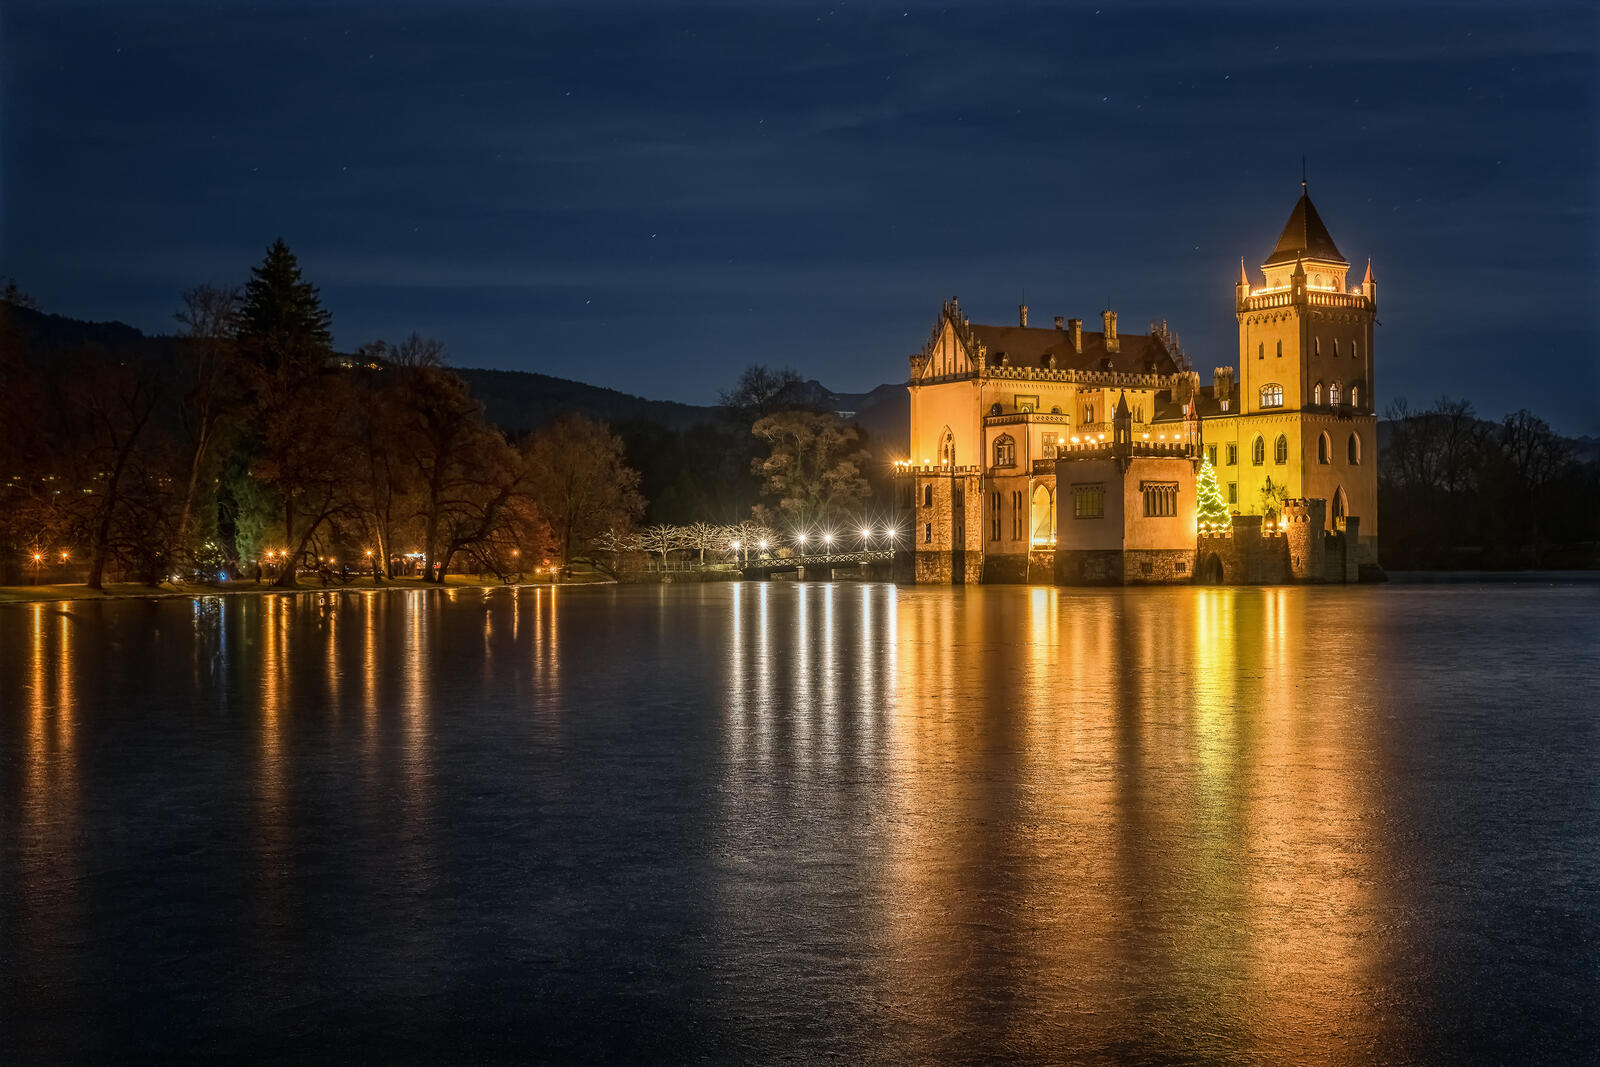 免费照片阿尼夫城堡在夜间